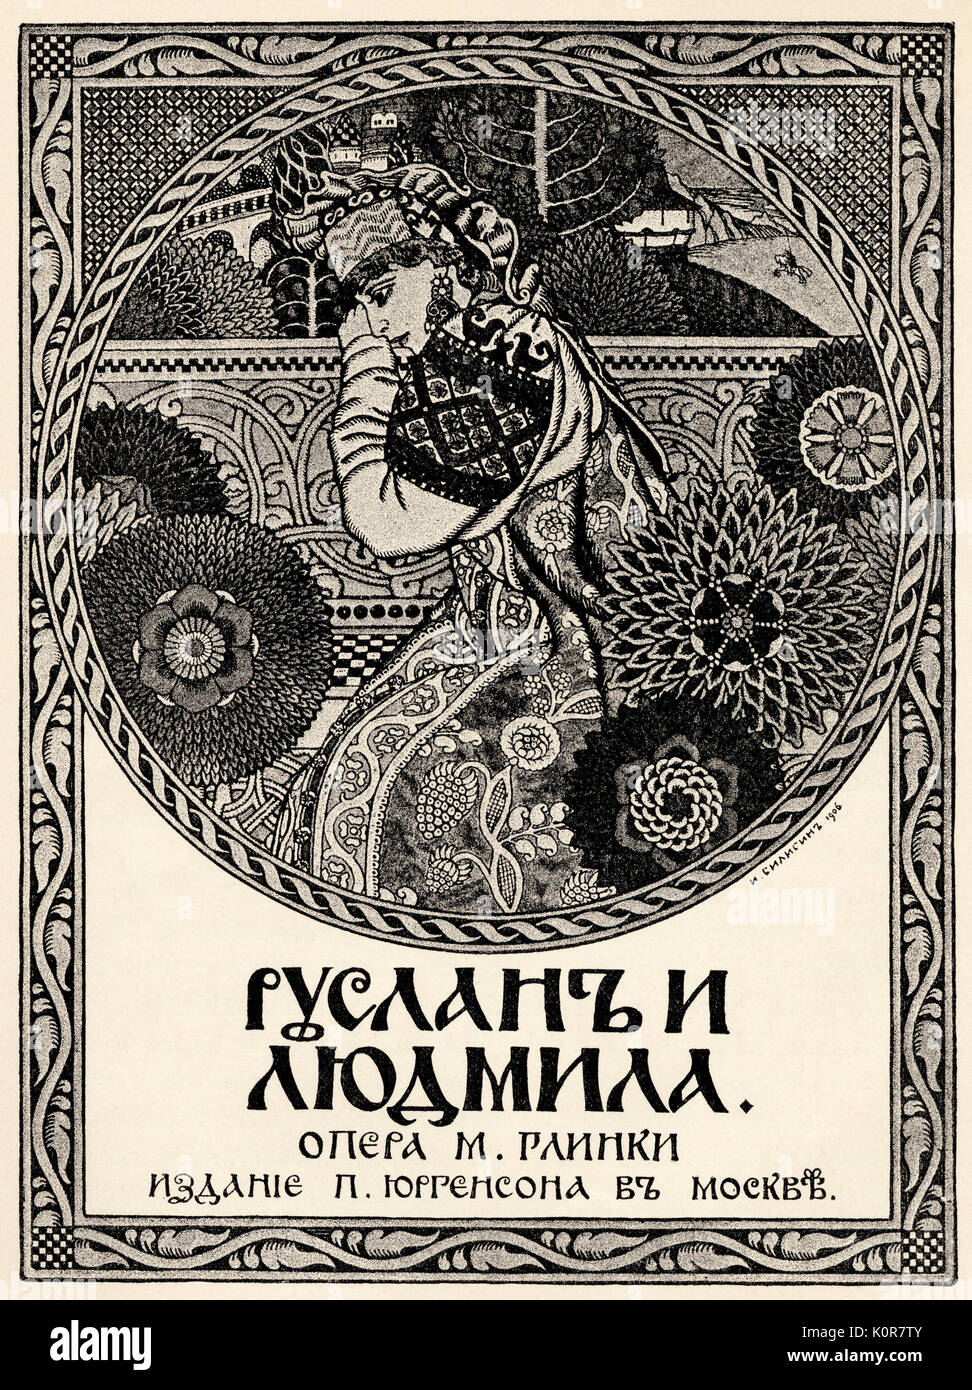 Mikhail I. Glinka's "Ruslan und Ludmilla" - Titel Seite der Partitur. Im Jahre 1842 veröffentlicht. Russischen Komponisten (1804-1857) Stockfoto